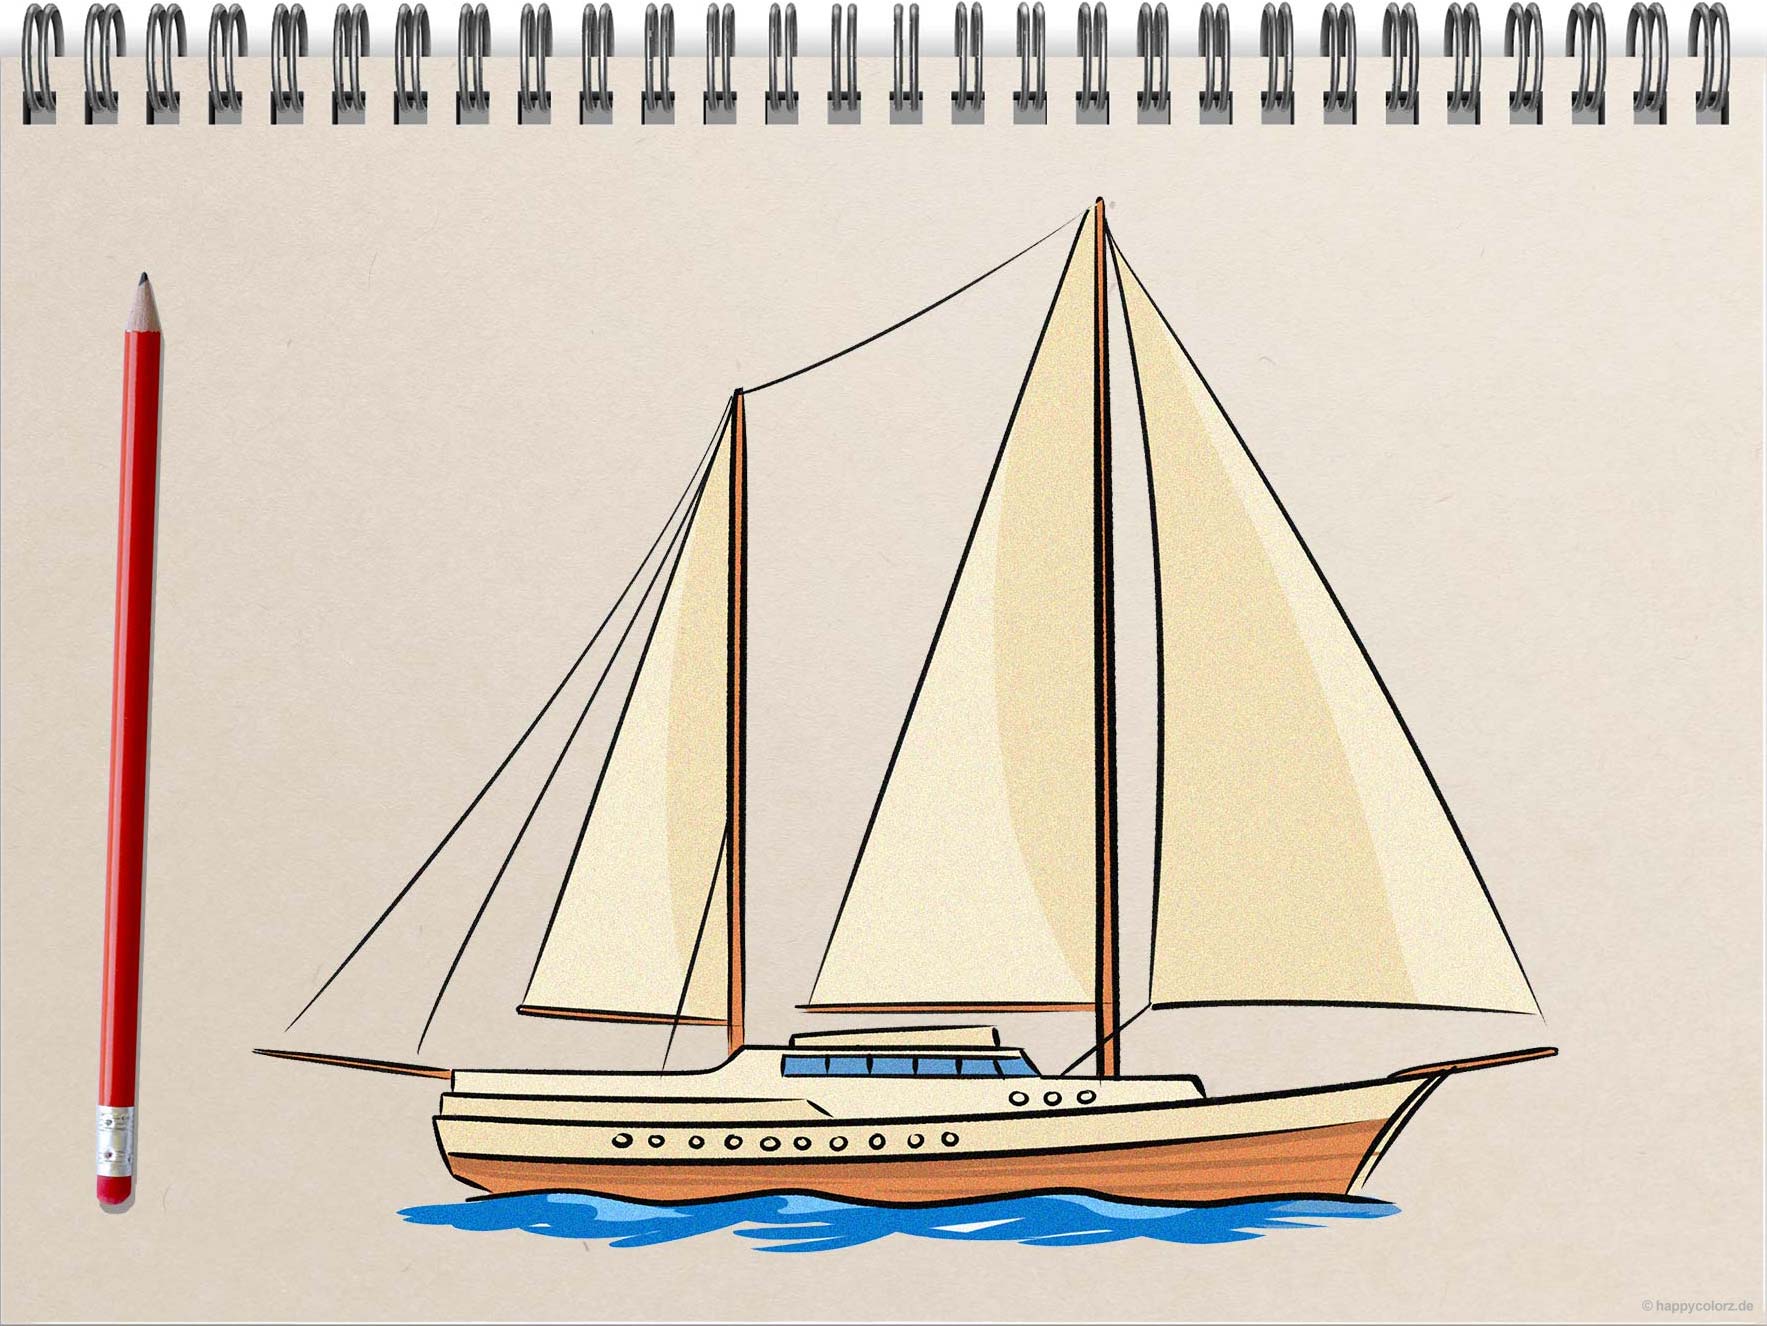 Schiff zeichnen - Schritt-für-Schritt Anleitung mit Vorlagen